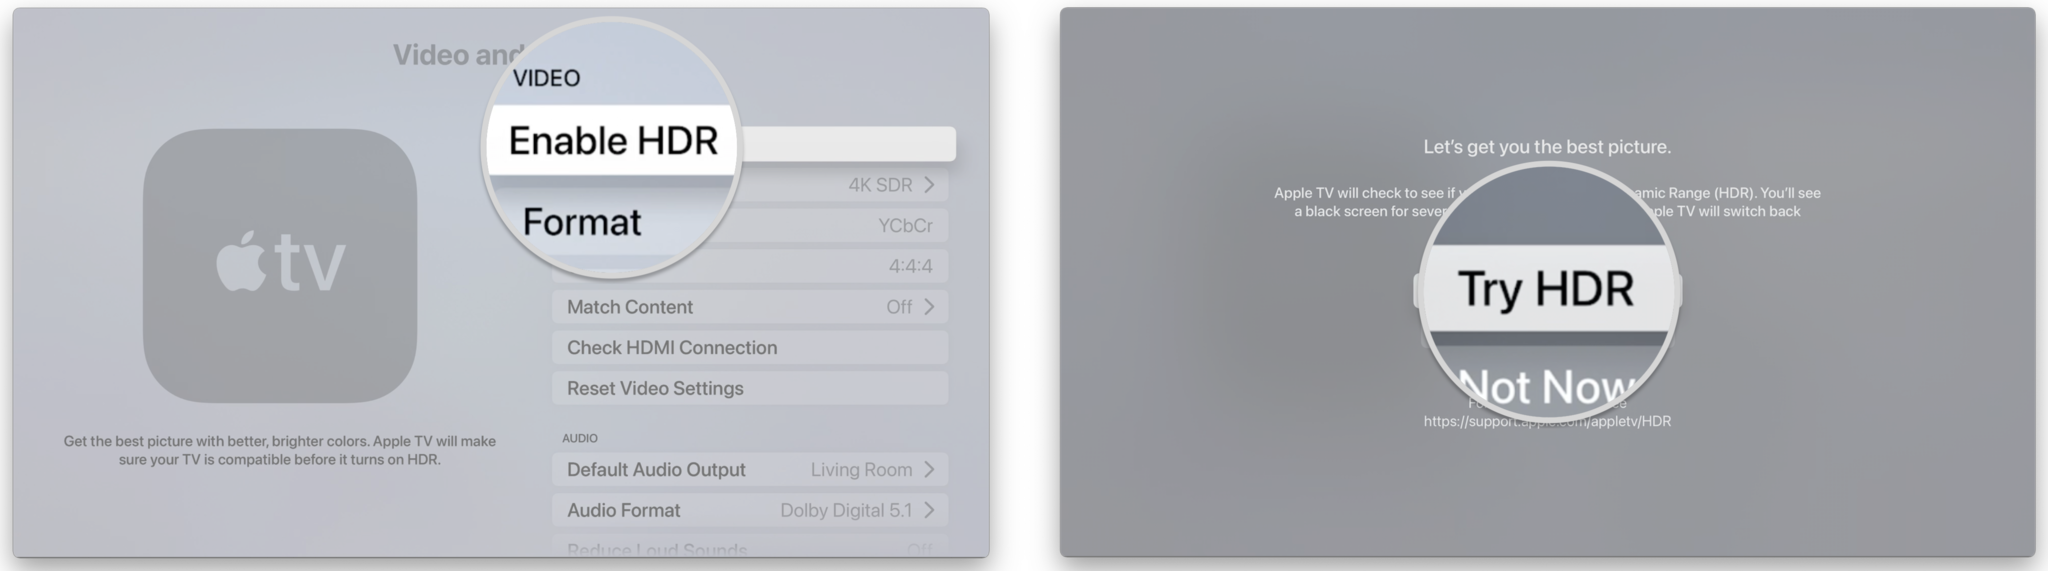 Comment activer HDR sur Apple TV en affichant les étapes : Cliquez sur Activer HDR, Cliquez sur Essayer HDR